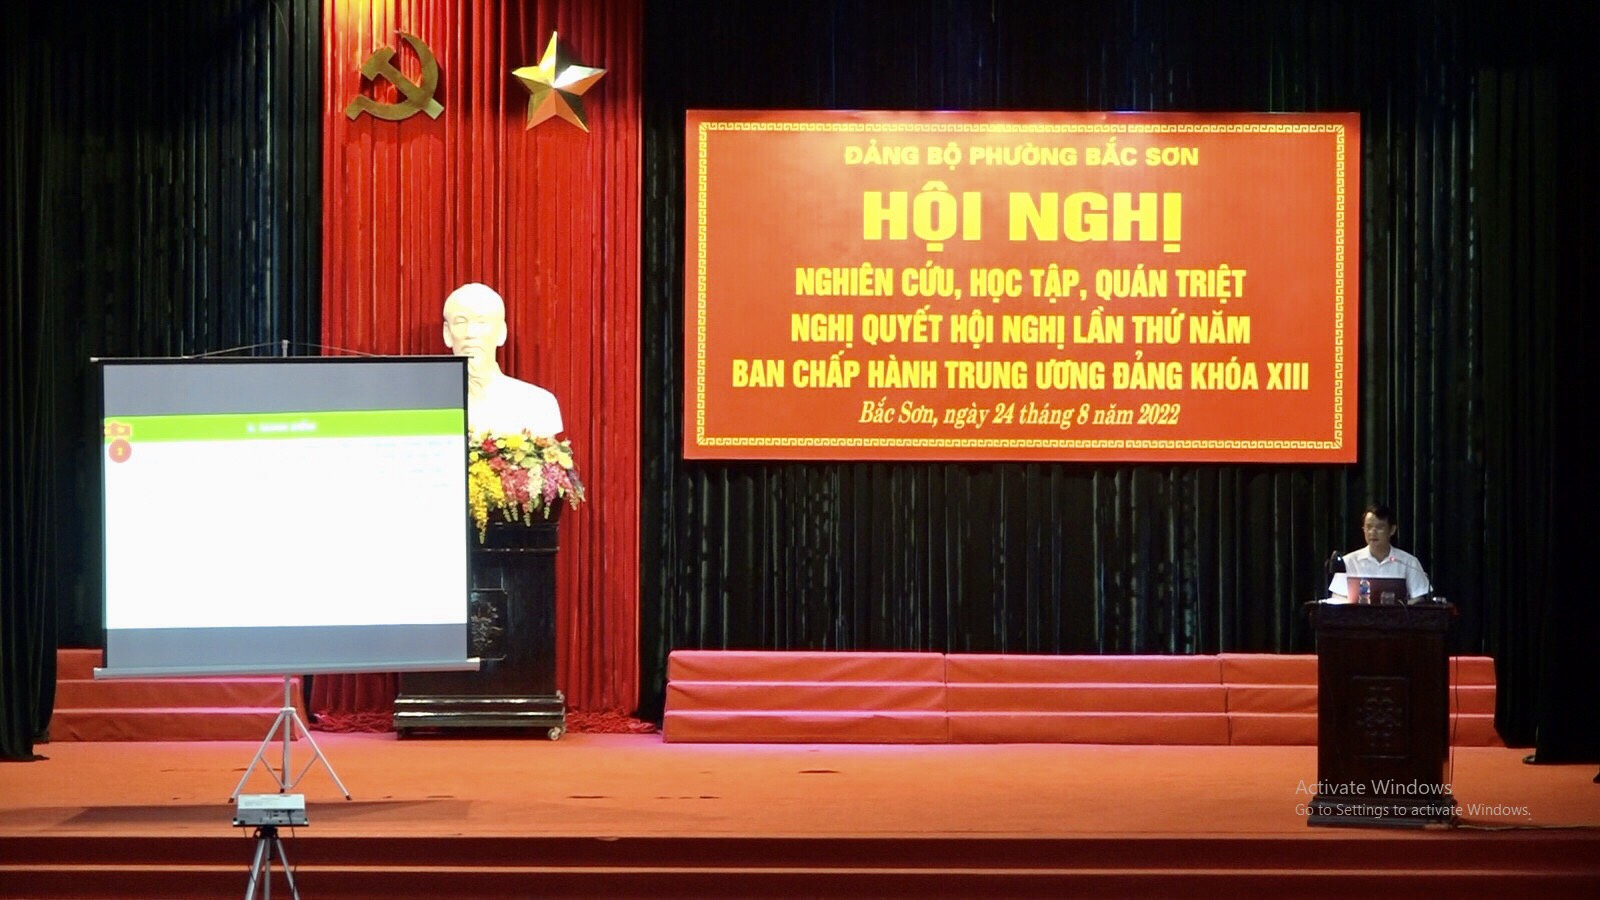 Đảng ủy phường Bắc Sơn tổ chức Hội nghị nghiên cứu, học tập, quán triệt Nghị quyết Hội nghị lần thứ năm Ban Chấp hành Trung ương Đảng khóa XIII